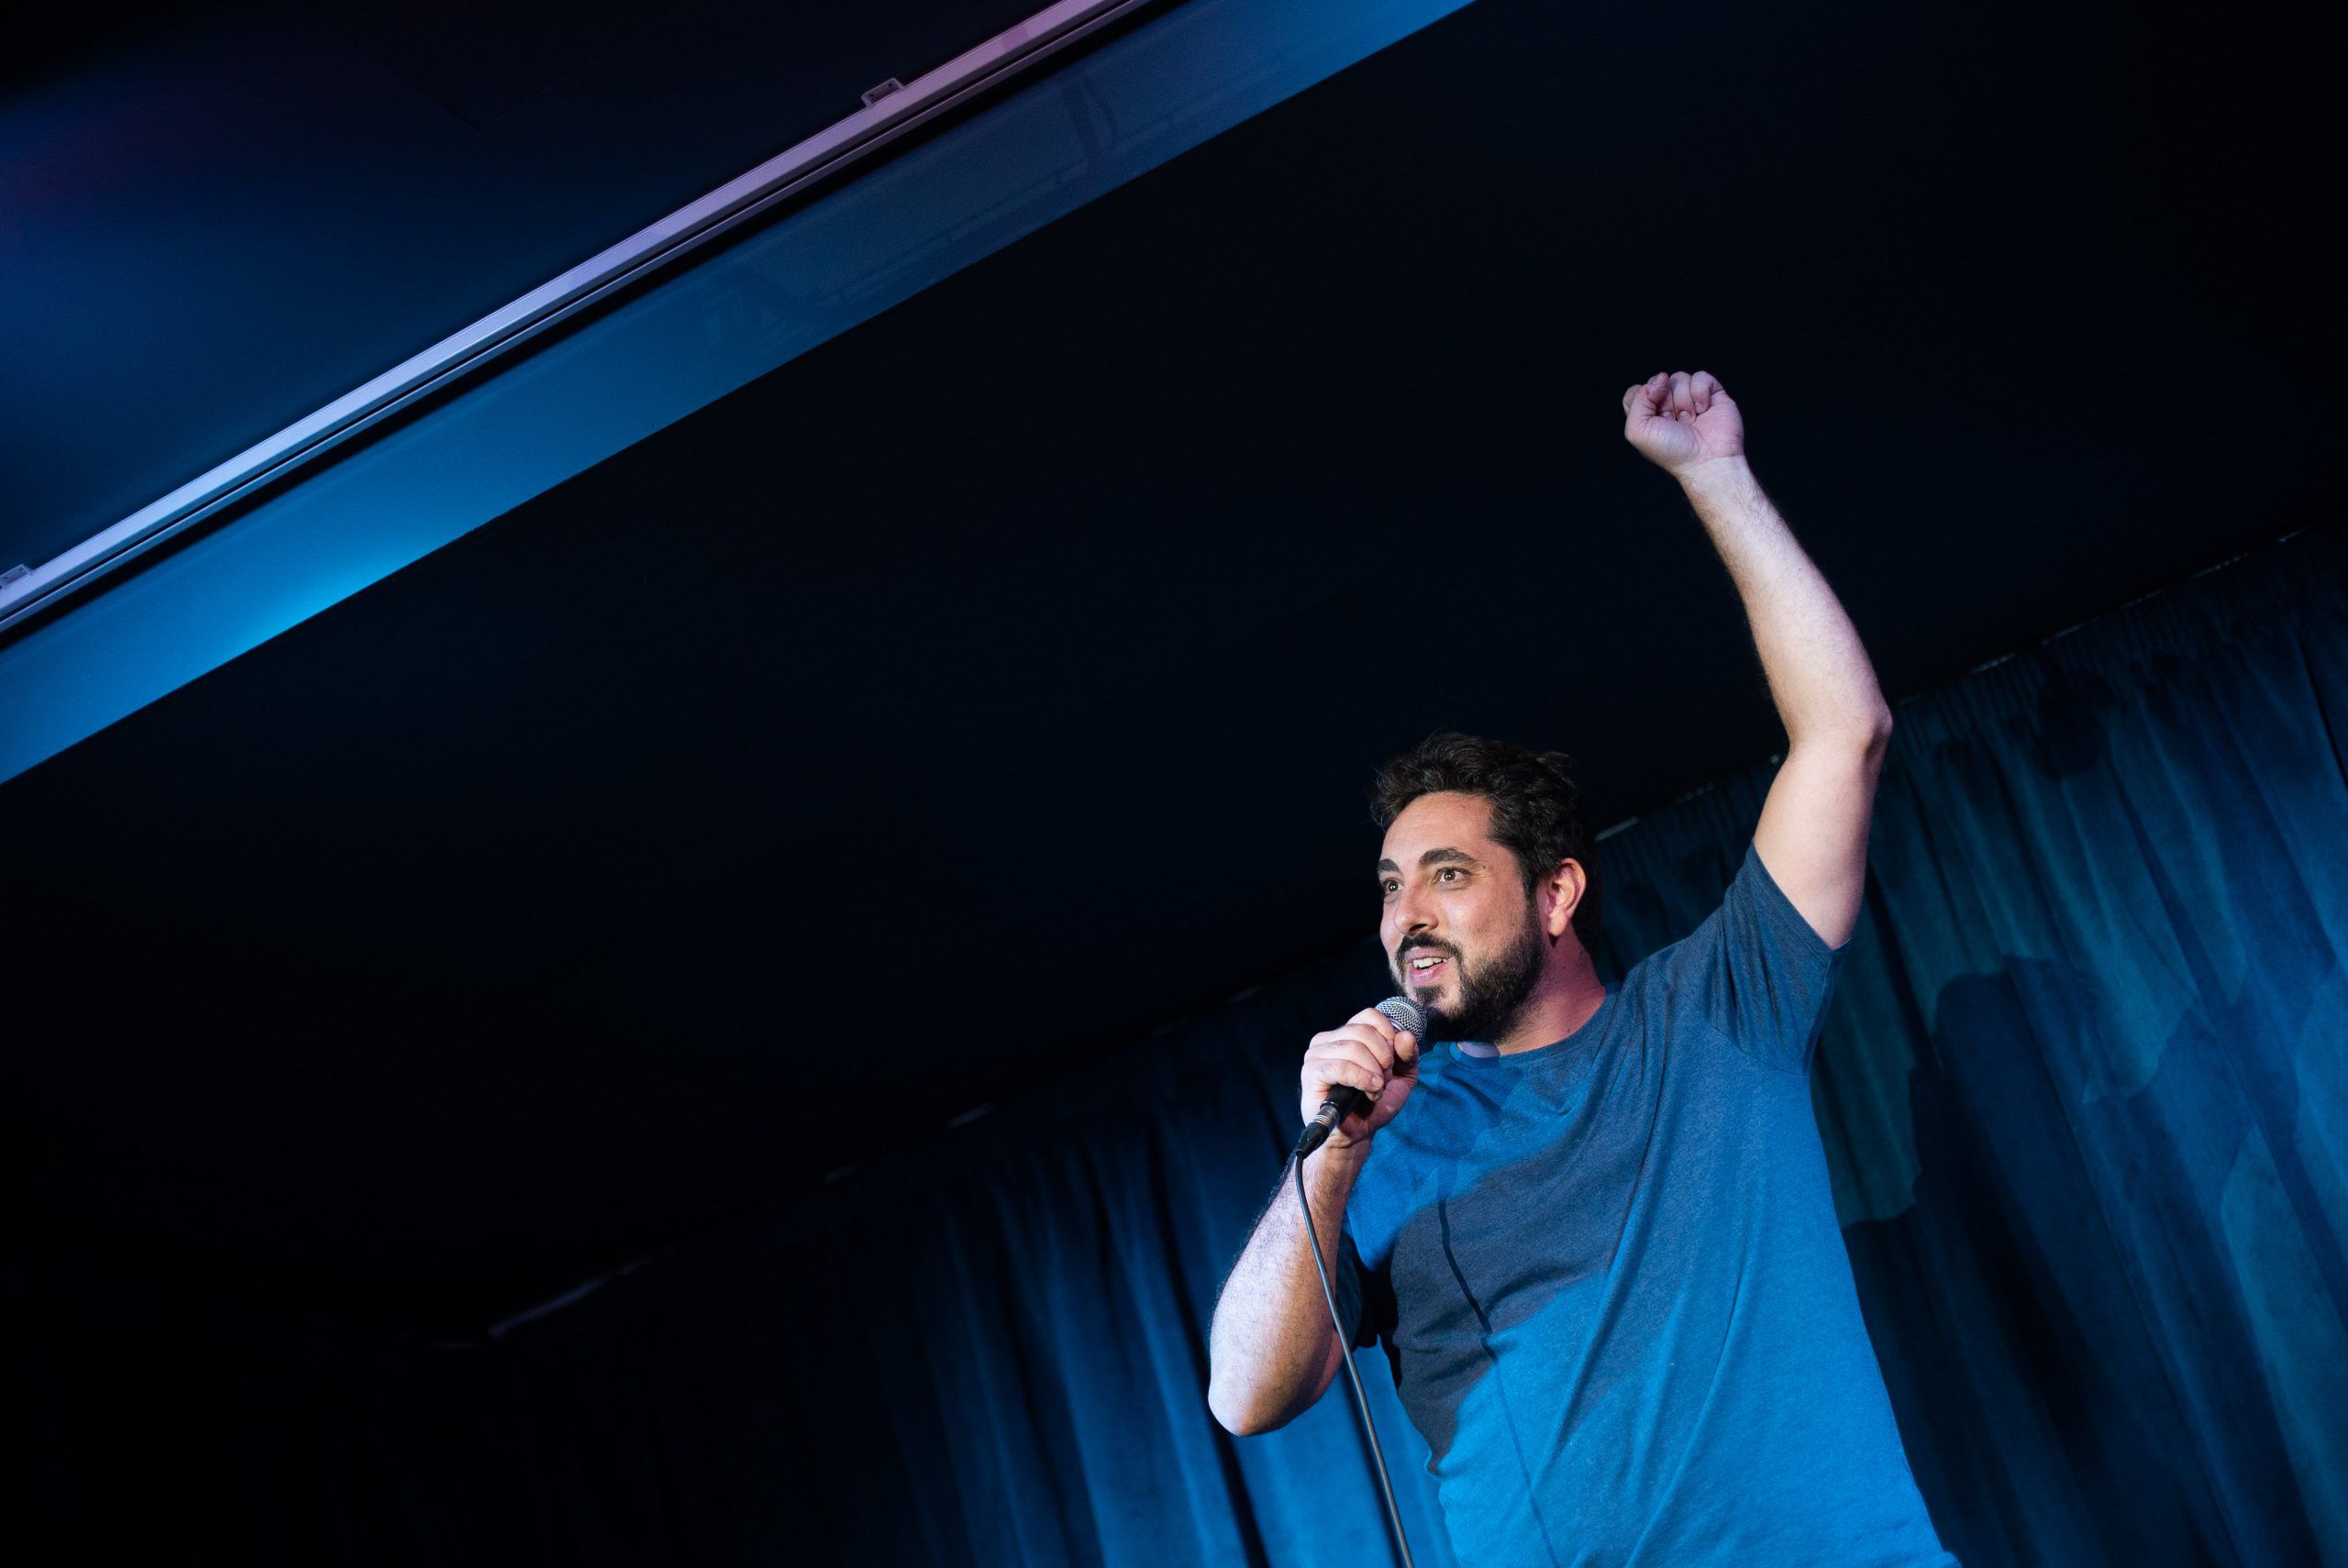 LAPO Comedy Sessions: as noites de stand-up comedy em Lisboa que surgiram com a pandemia